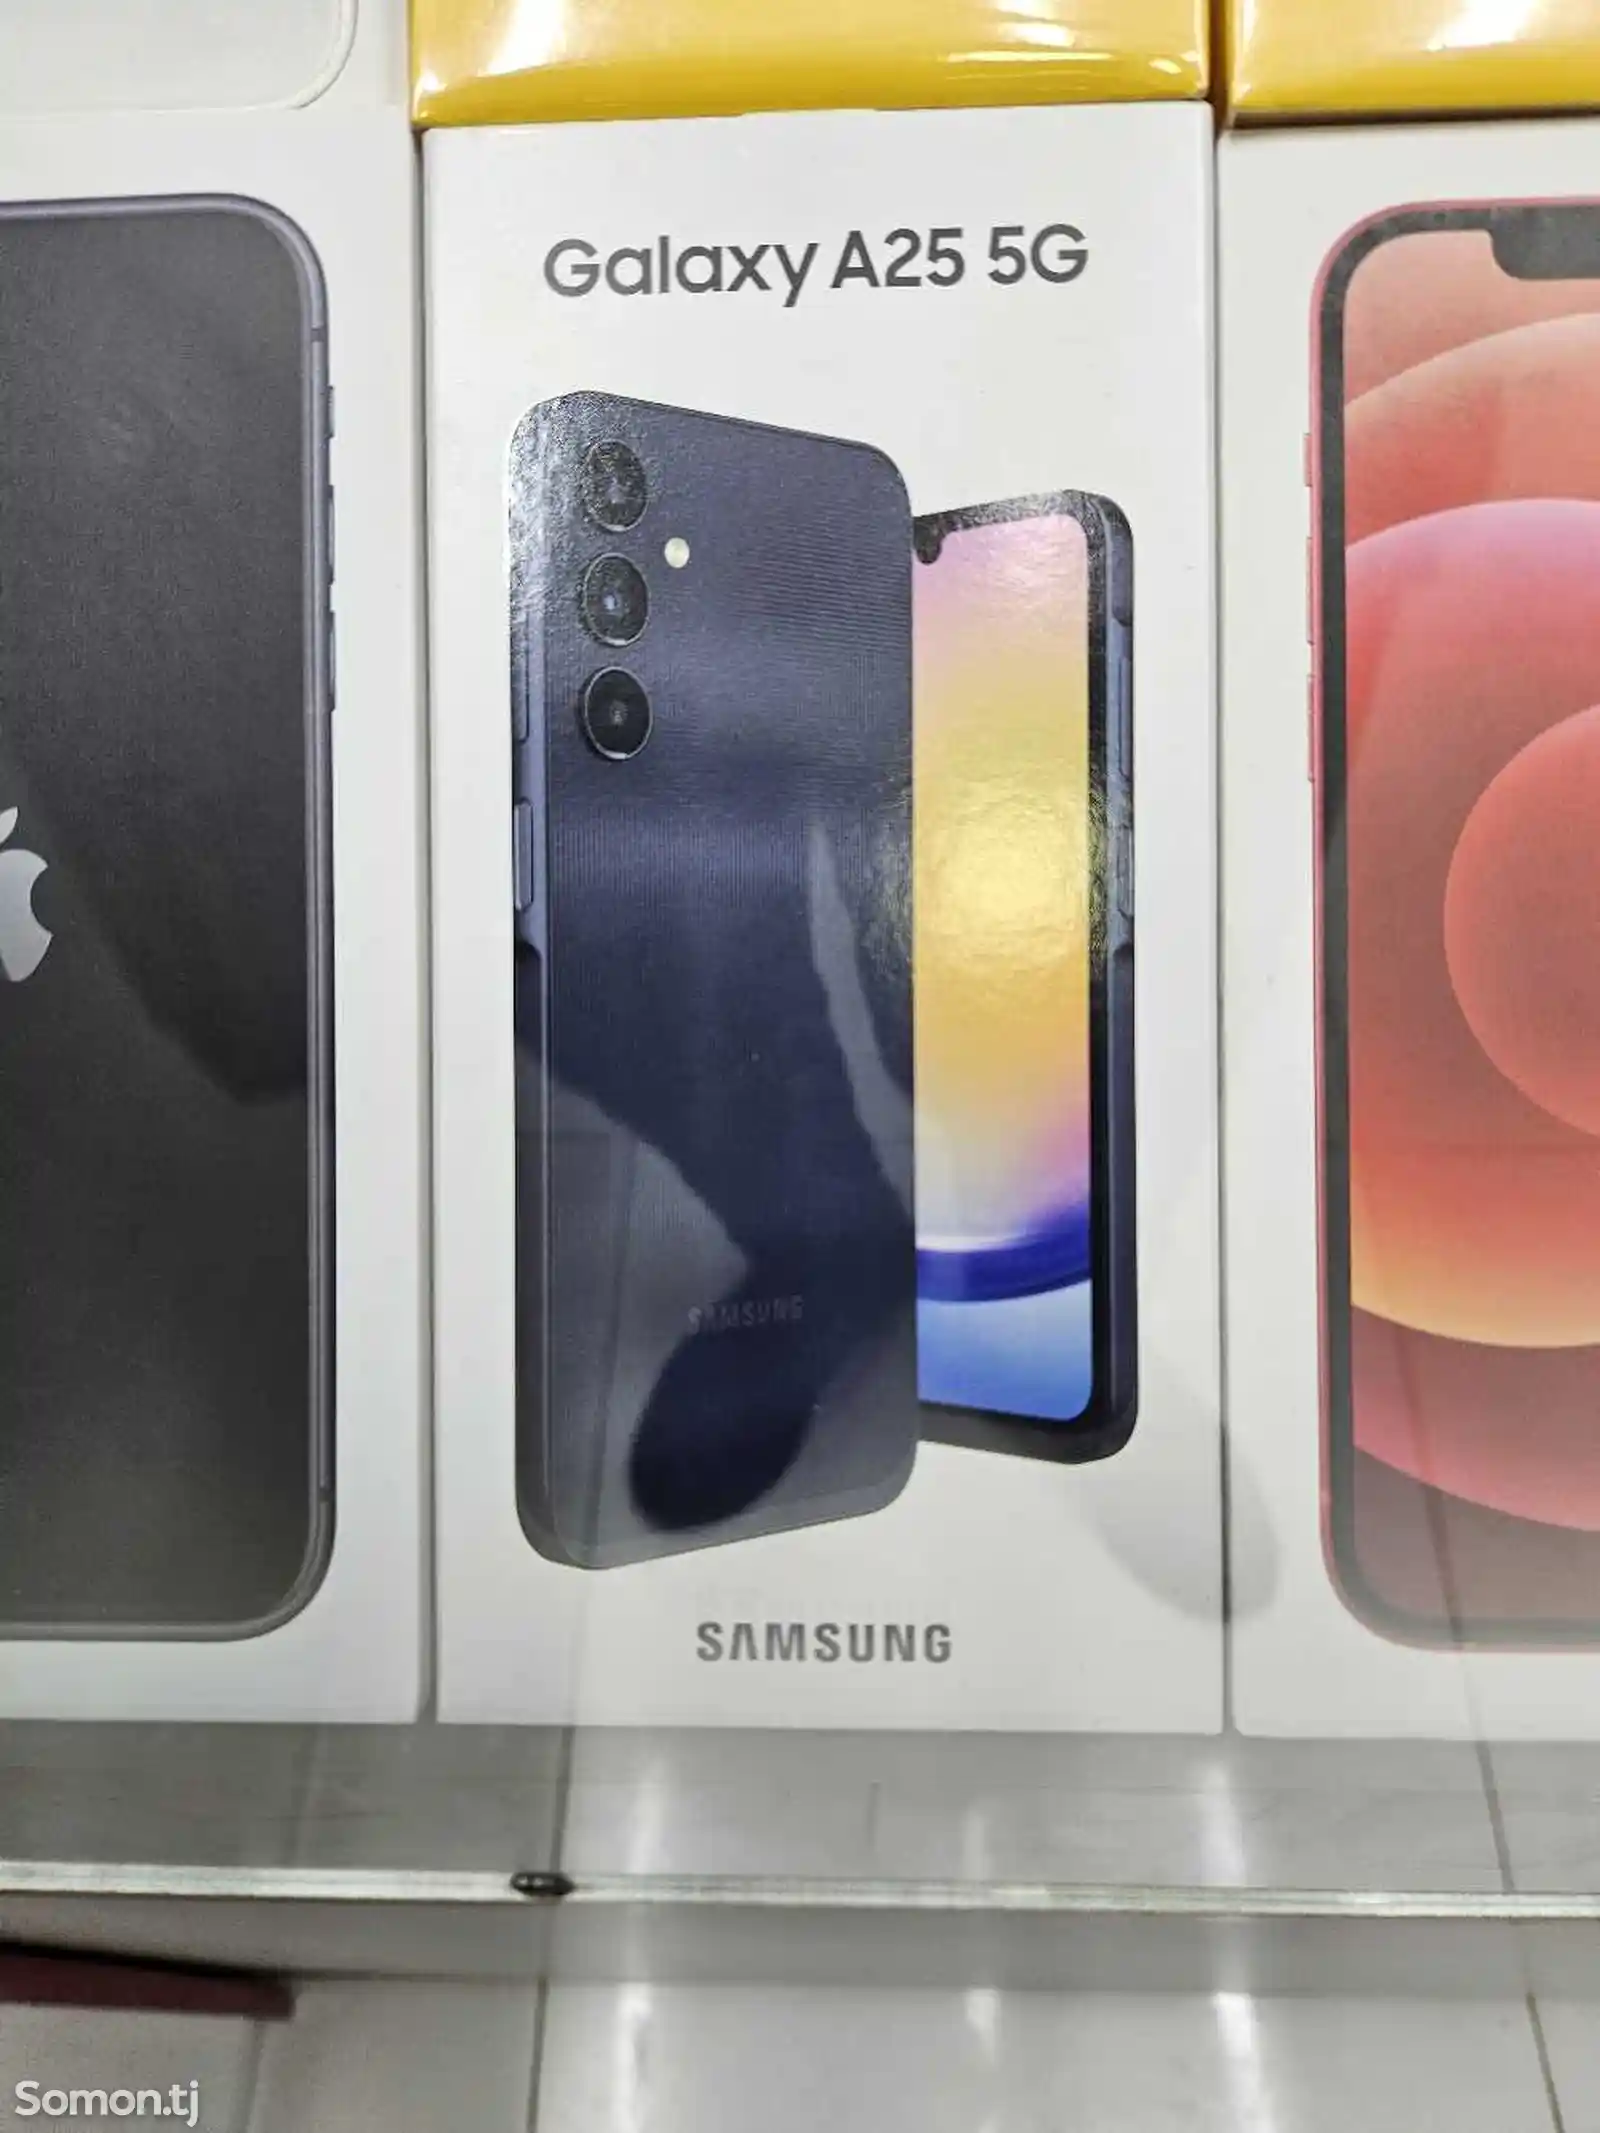 Samsung galaxy A25 dubai duos